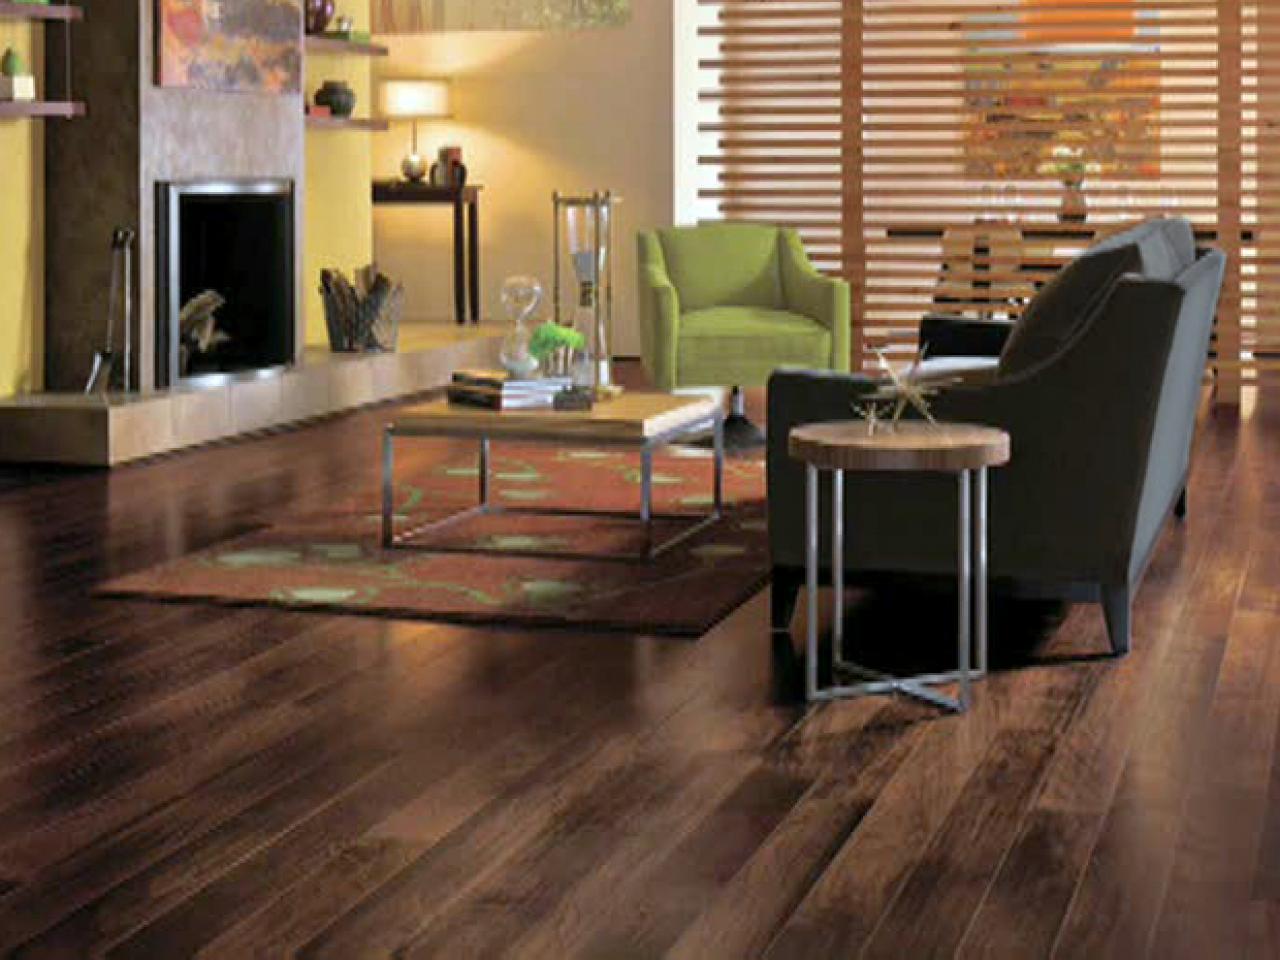 Guide To Selecting Flooring Diy, Tile Vs Hardwood Floors In Living Room